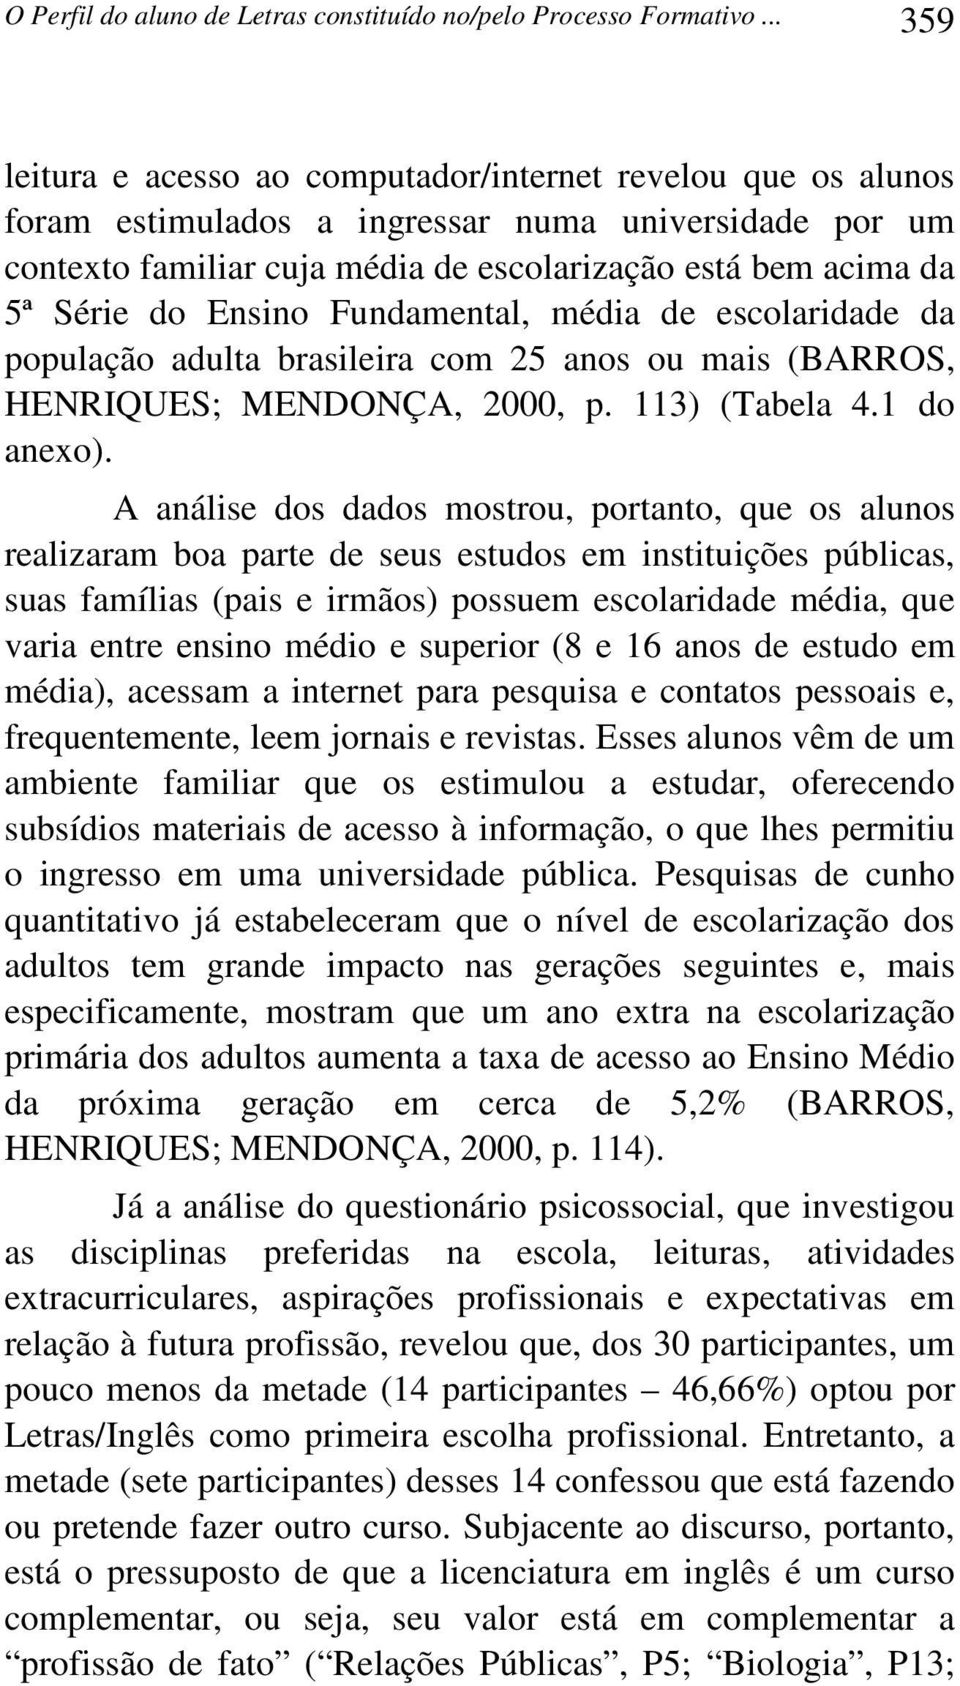 Ensino Fundamental, média de escolaridade da população adulta brasileira com 25 anos ou mais (BARROS, HENRIQUES; MENDONÇA, 2000, p. 113) (Tabela 4.1 do anexo).